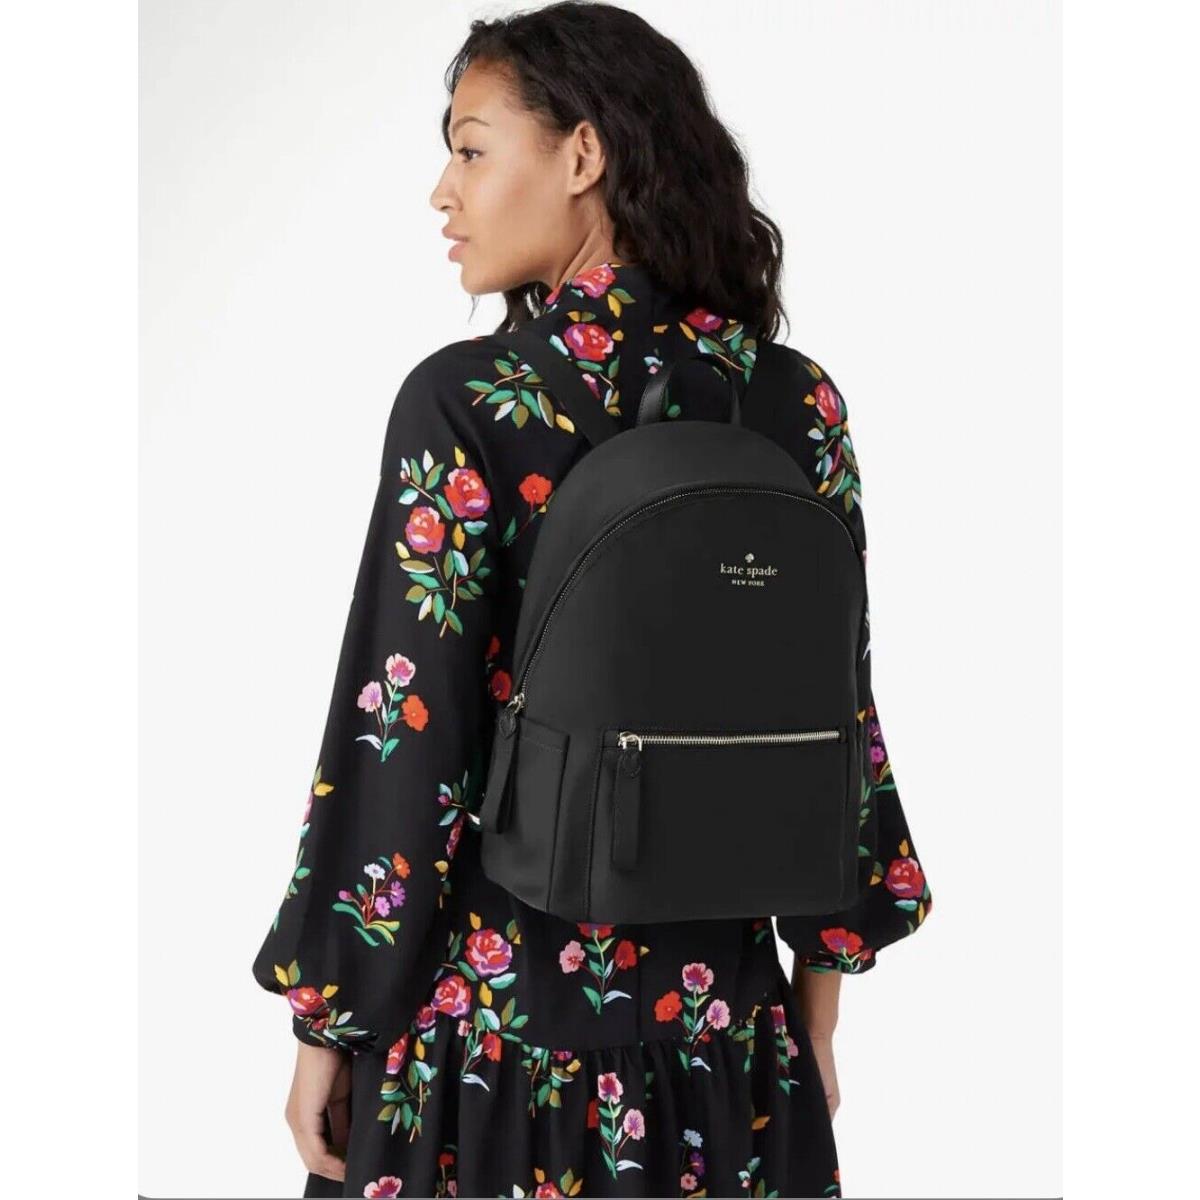 Kate Spade Chelsea Nylon Large Backpack The Little Better Tote Bag Black